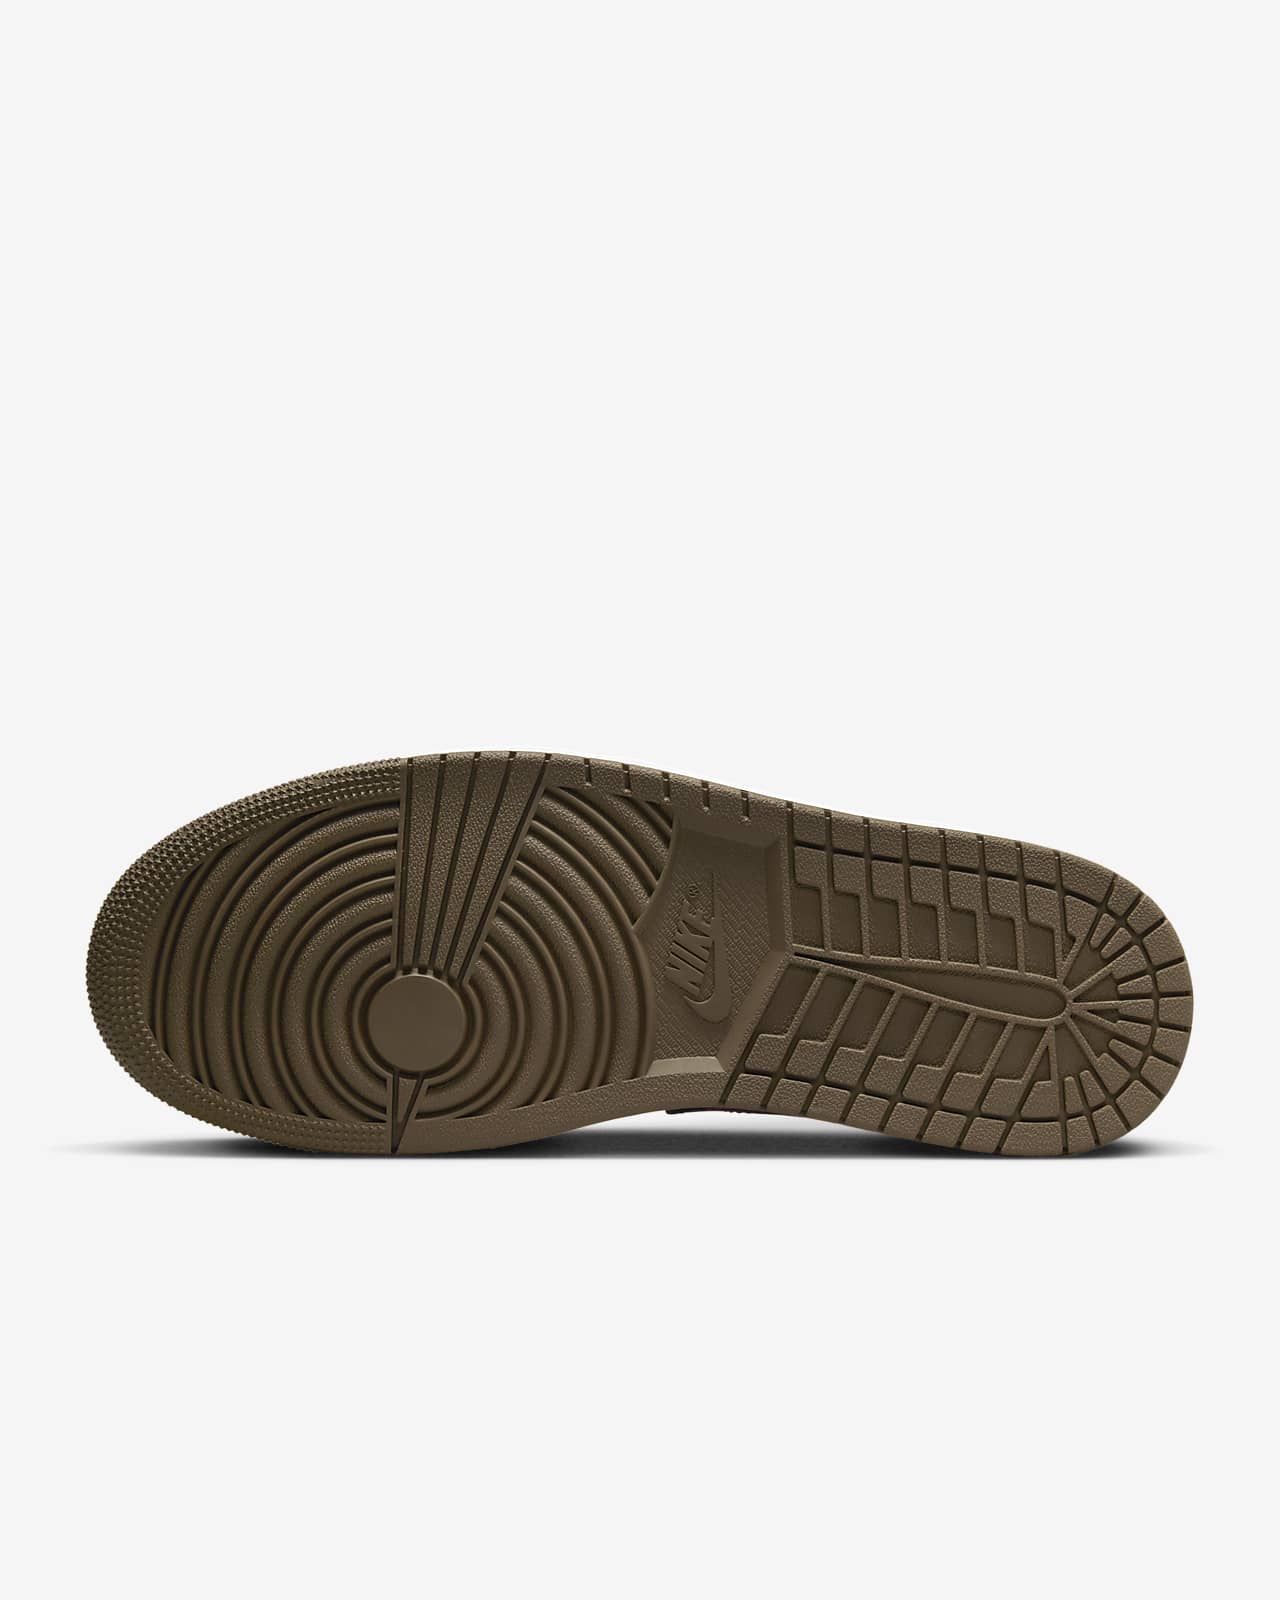 Jordan 1 Zapatillas - Nike ES